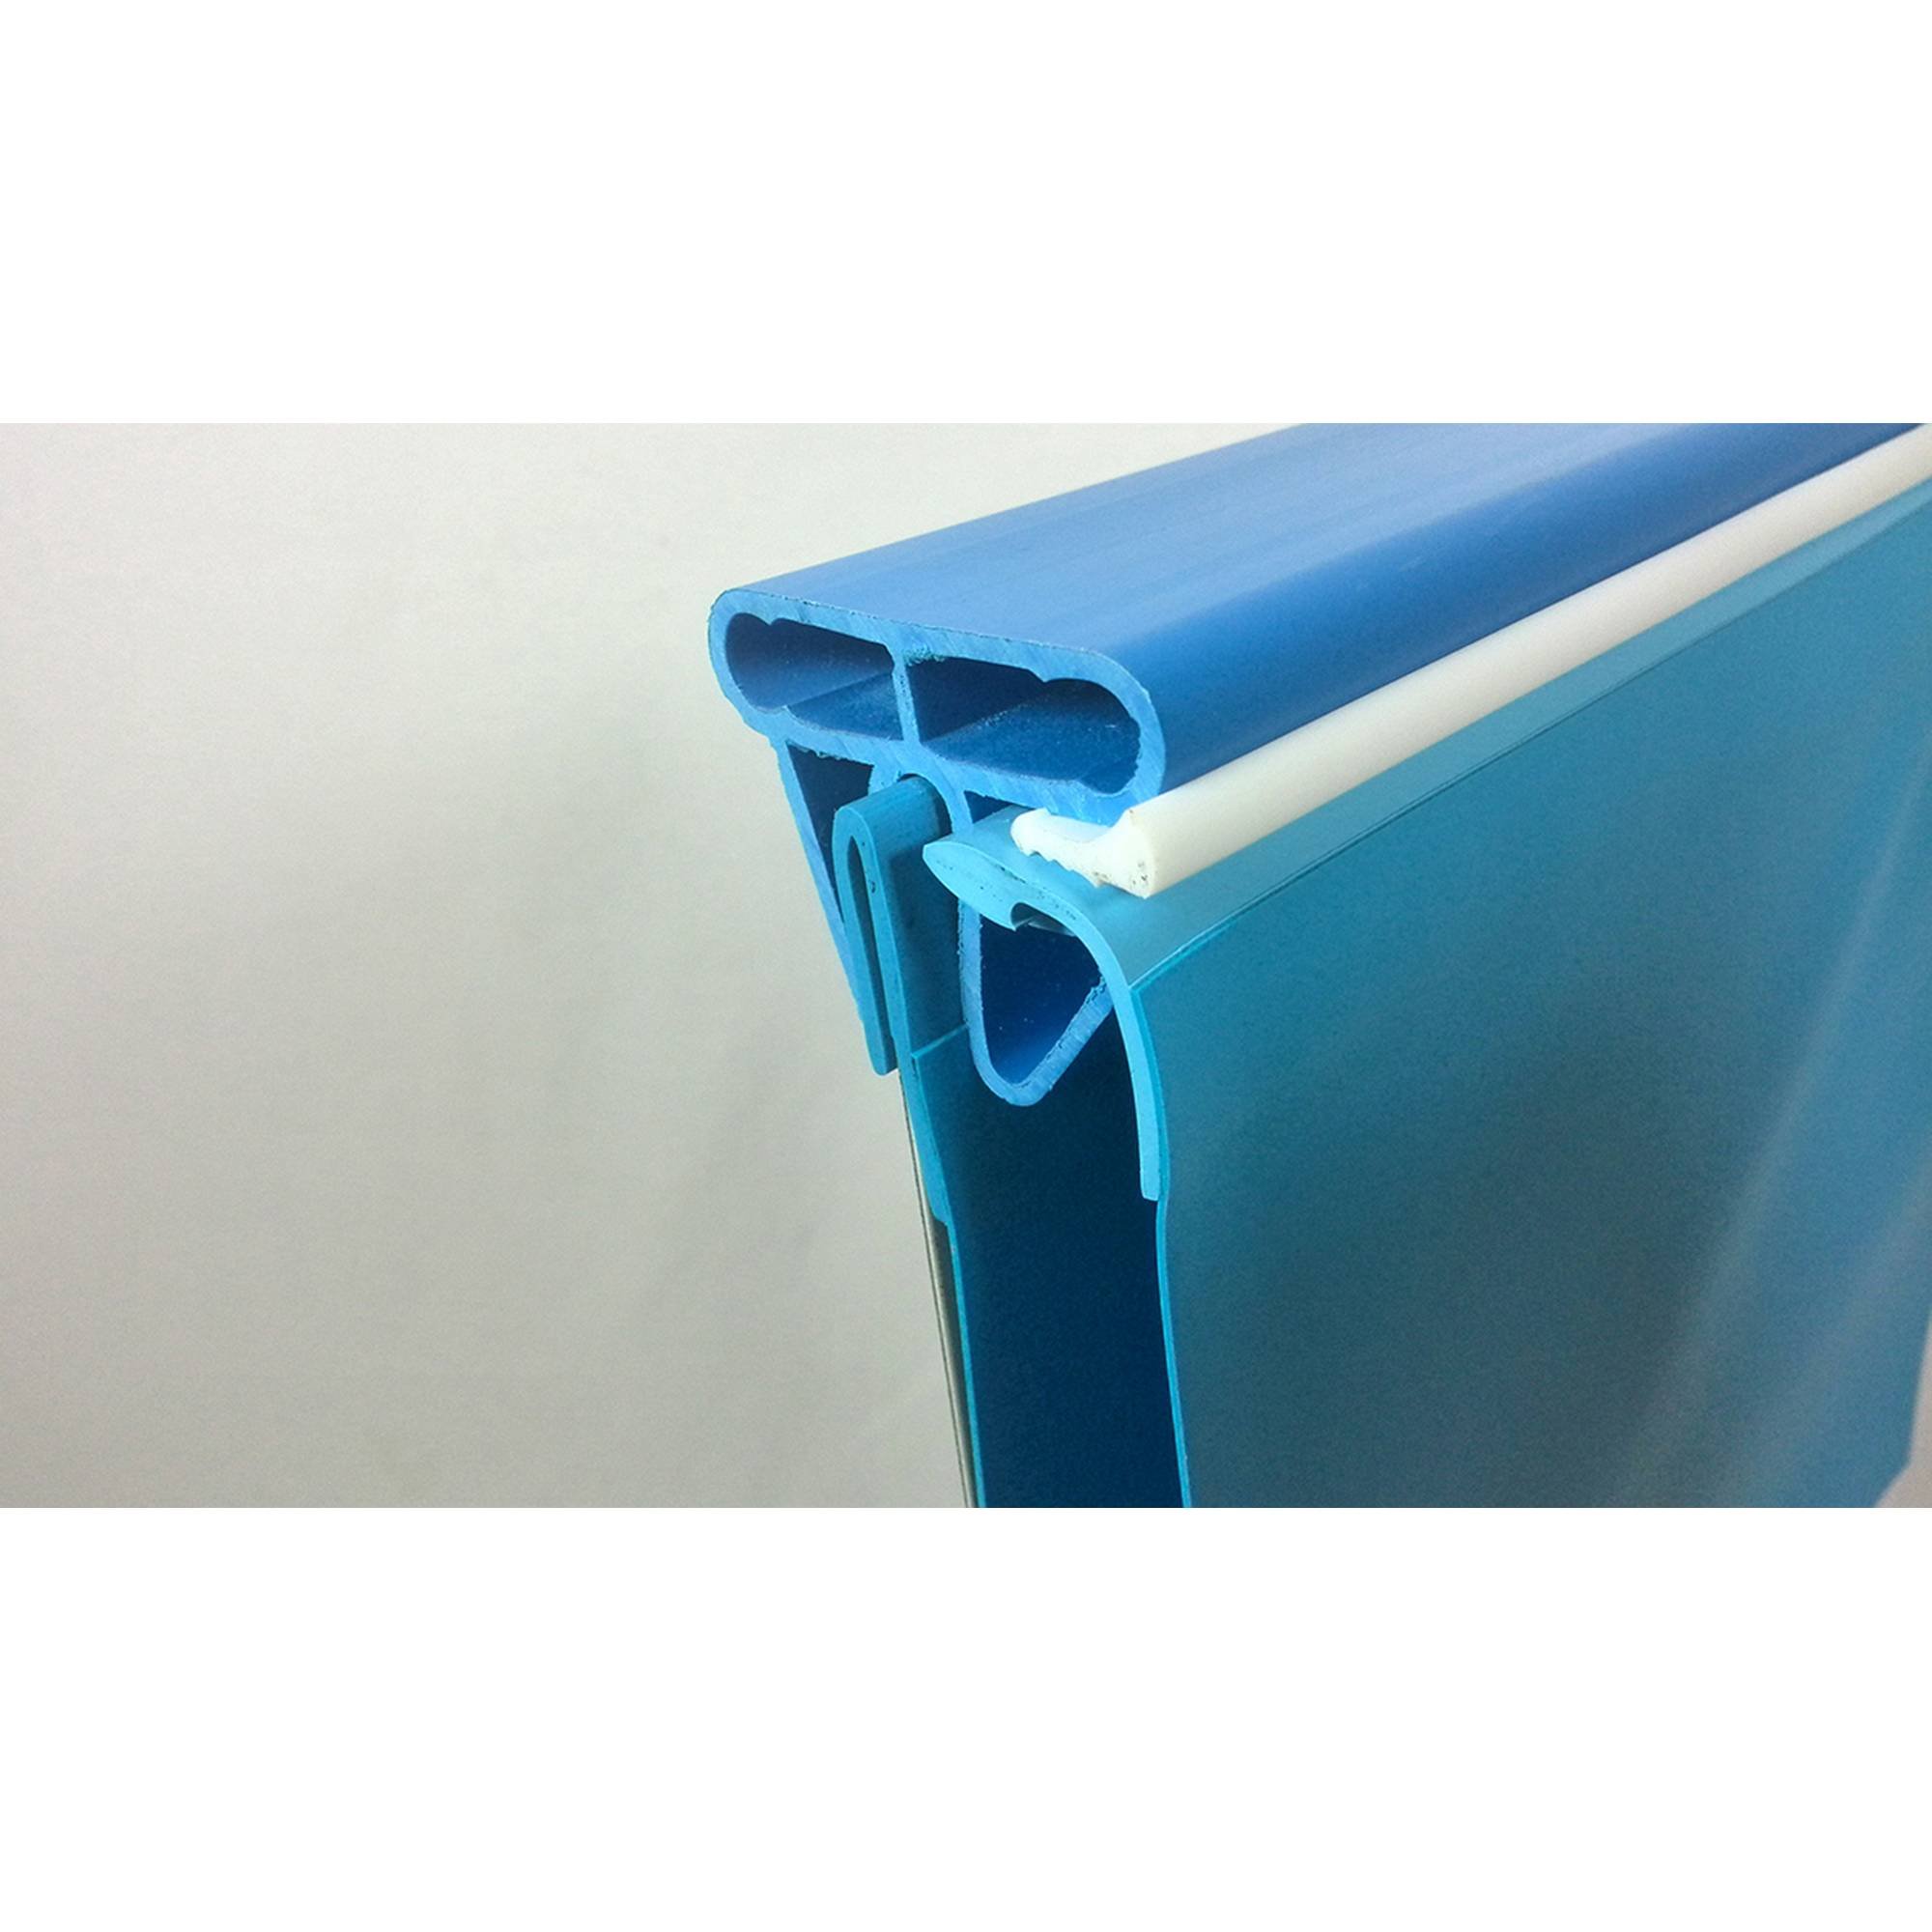 Stahlwandpool rund Exklusiv 400x120 cm, Stahl 0,6 mm weiß, Folie 0,6 mm blau, Einhängebiese